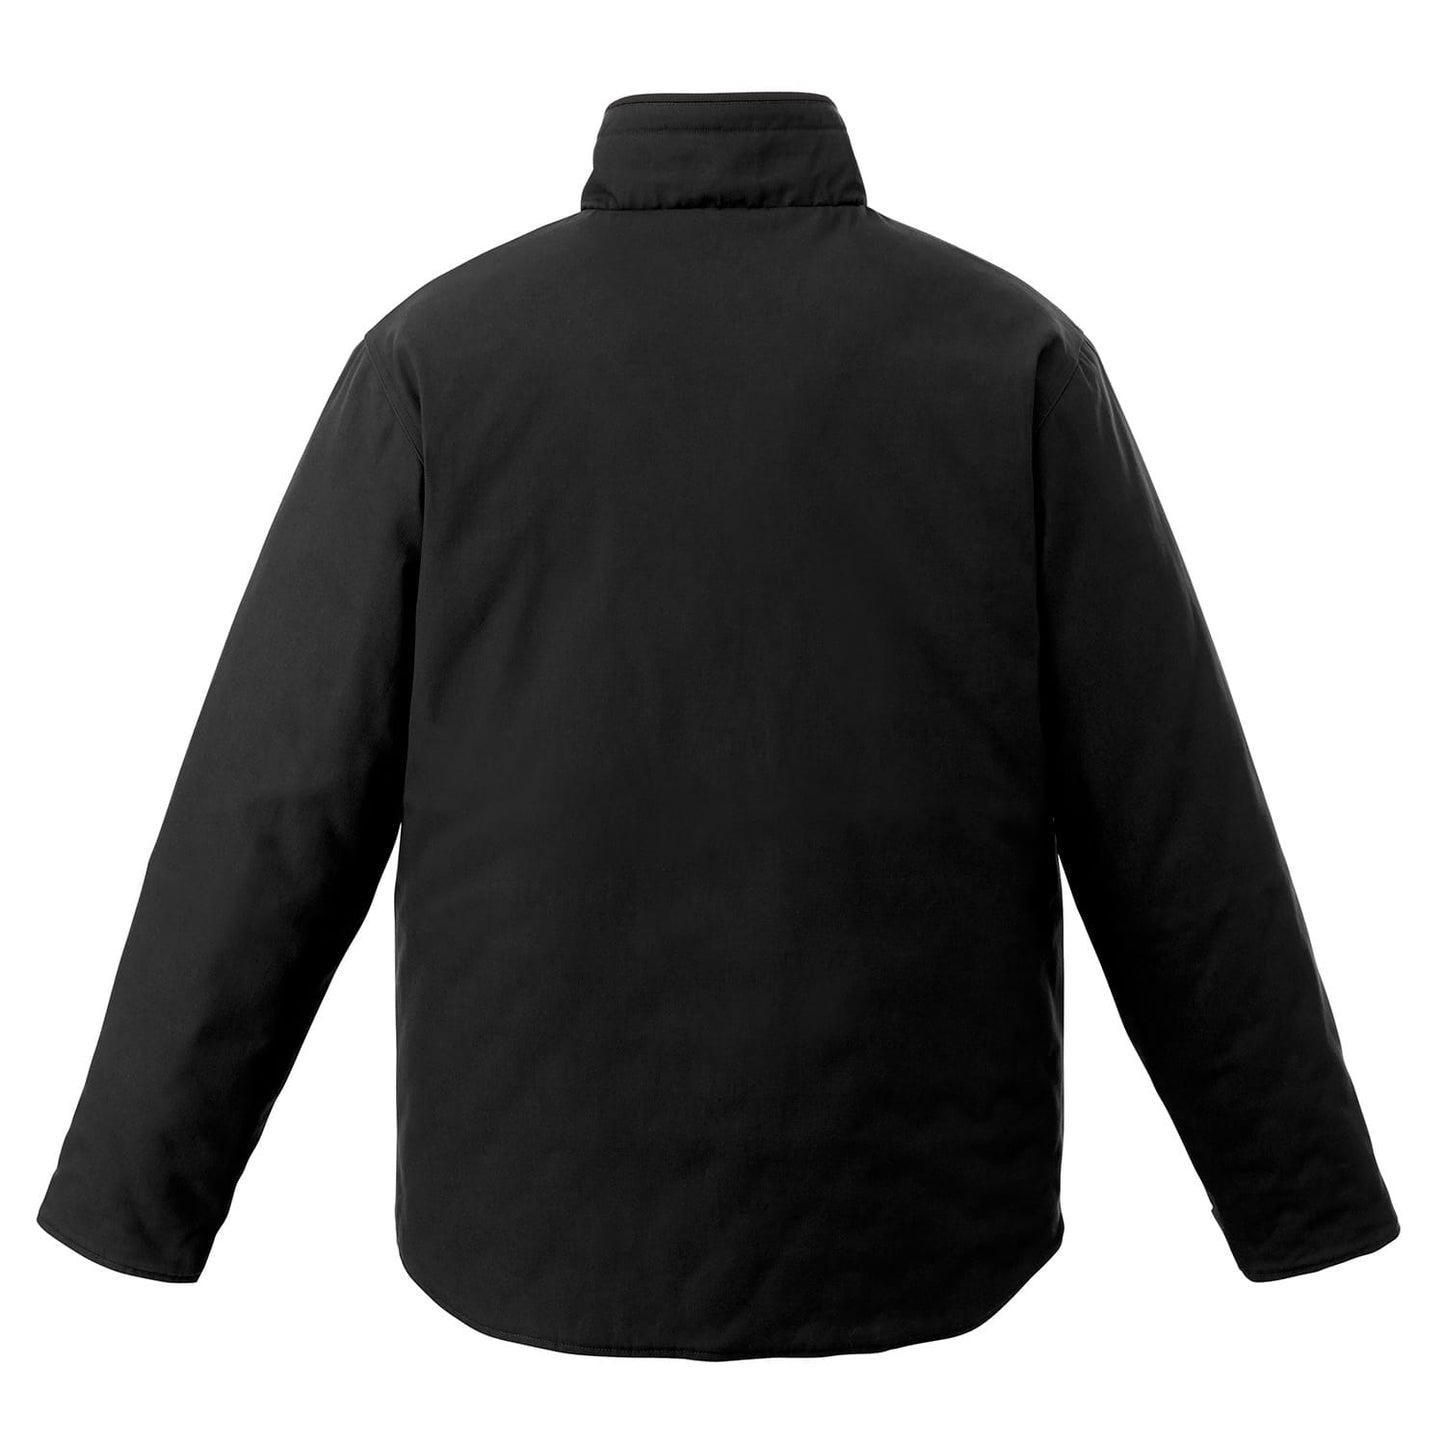 Zircon – Reversible Jacket